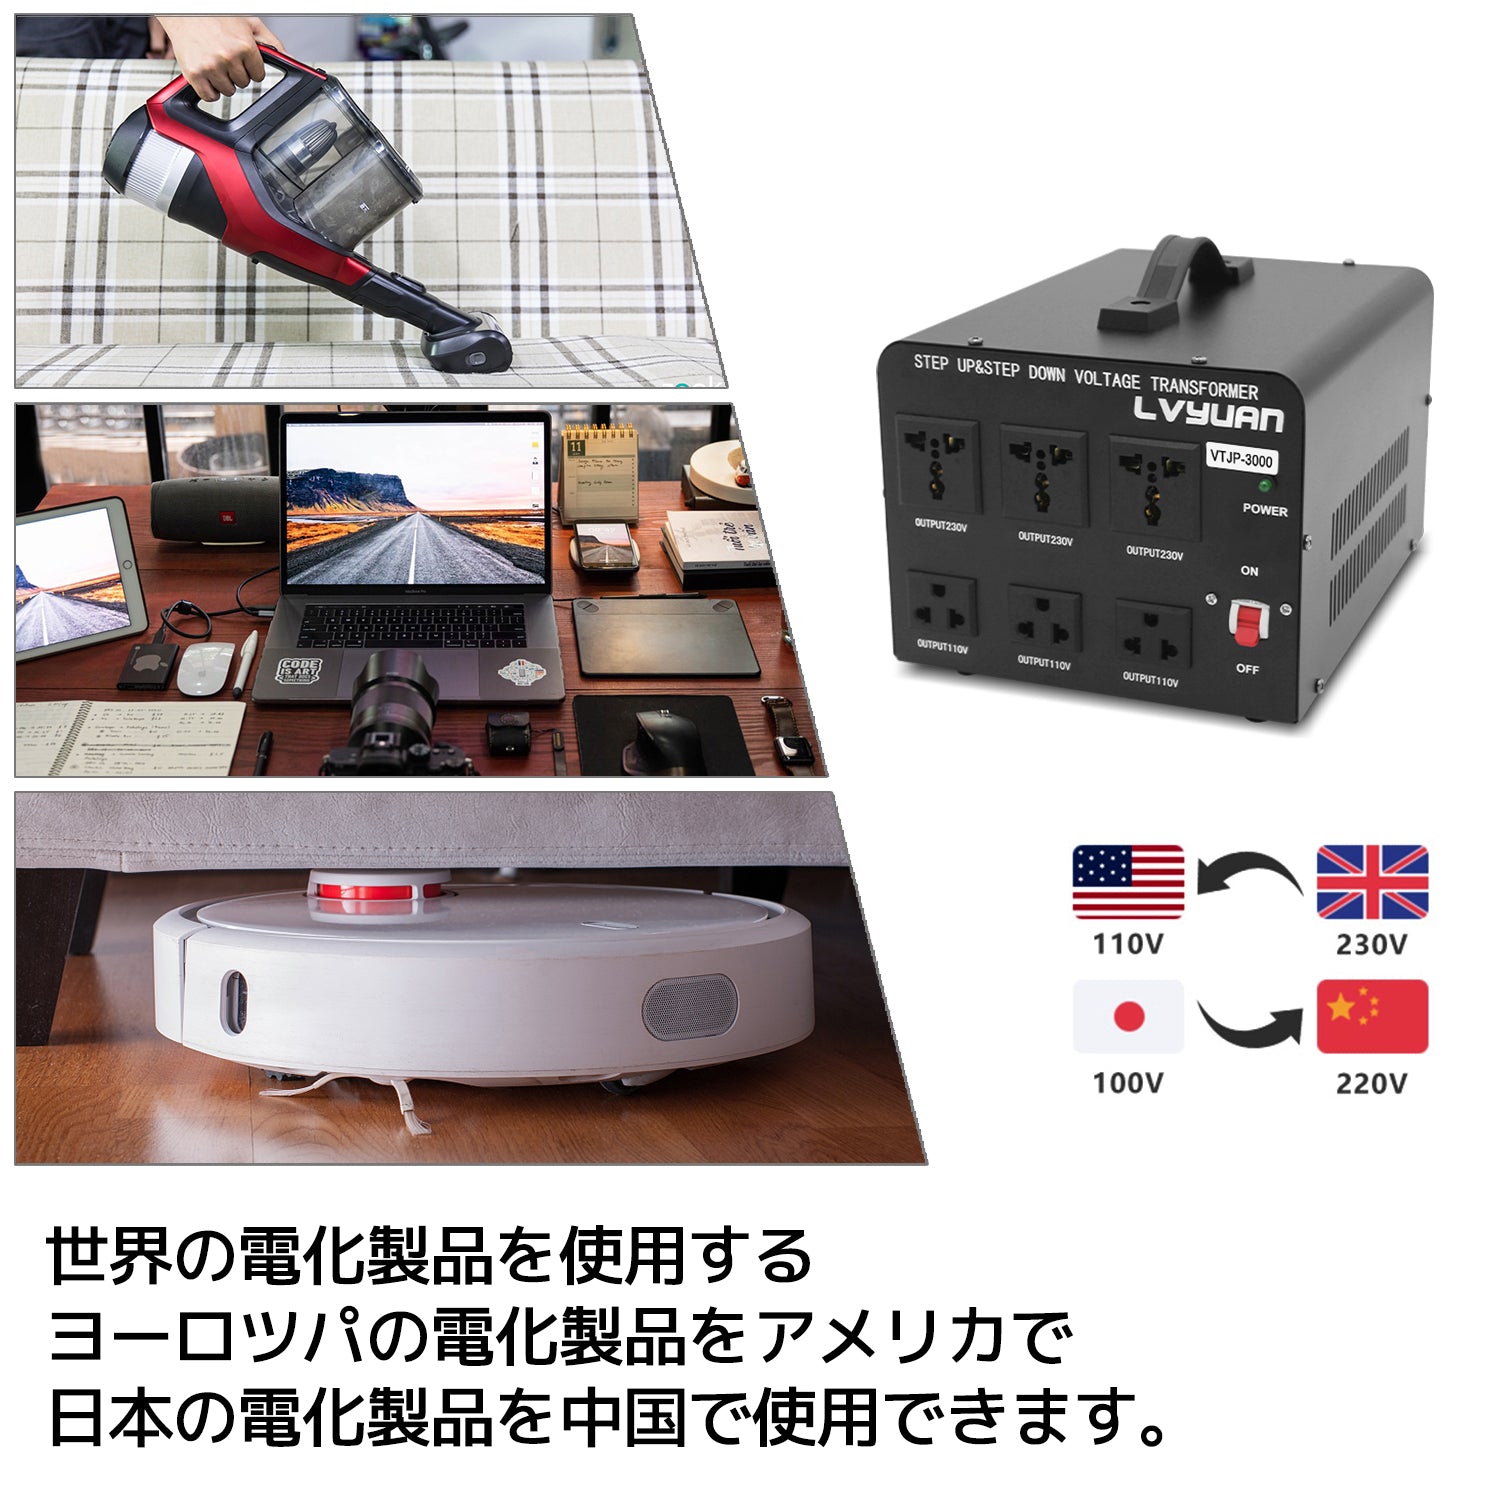 【 LVYUAN VTJP-3000 】変圧器